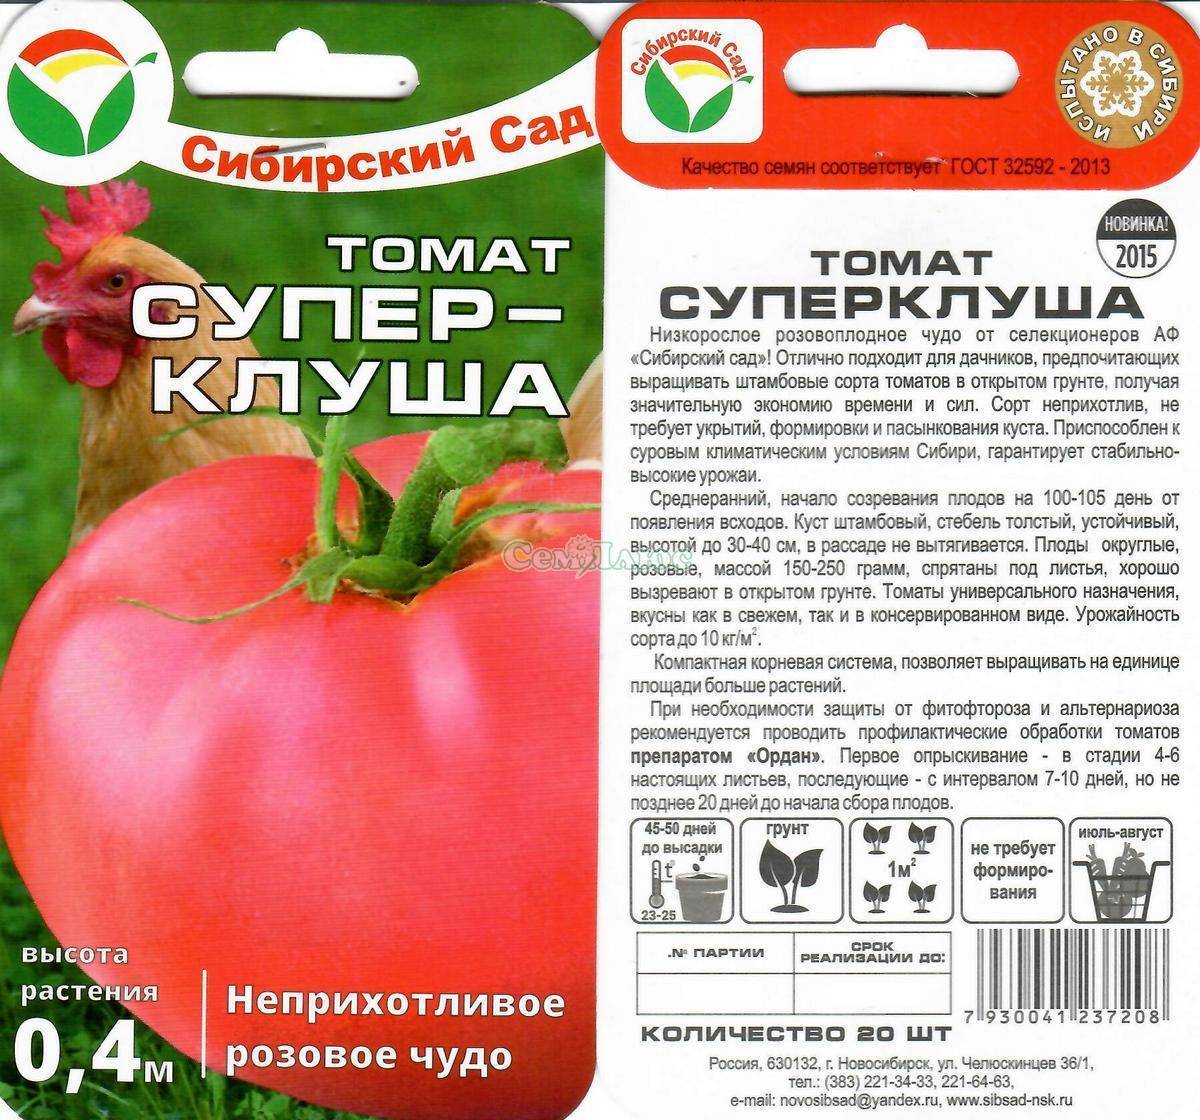 Томат "торнадо f1": описание и характеристики гибридного сорта, фотографии плодов-помидоров